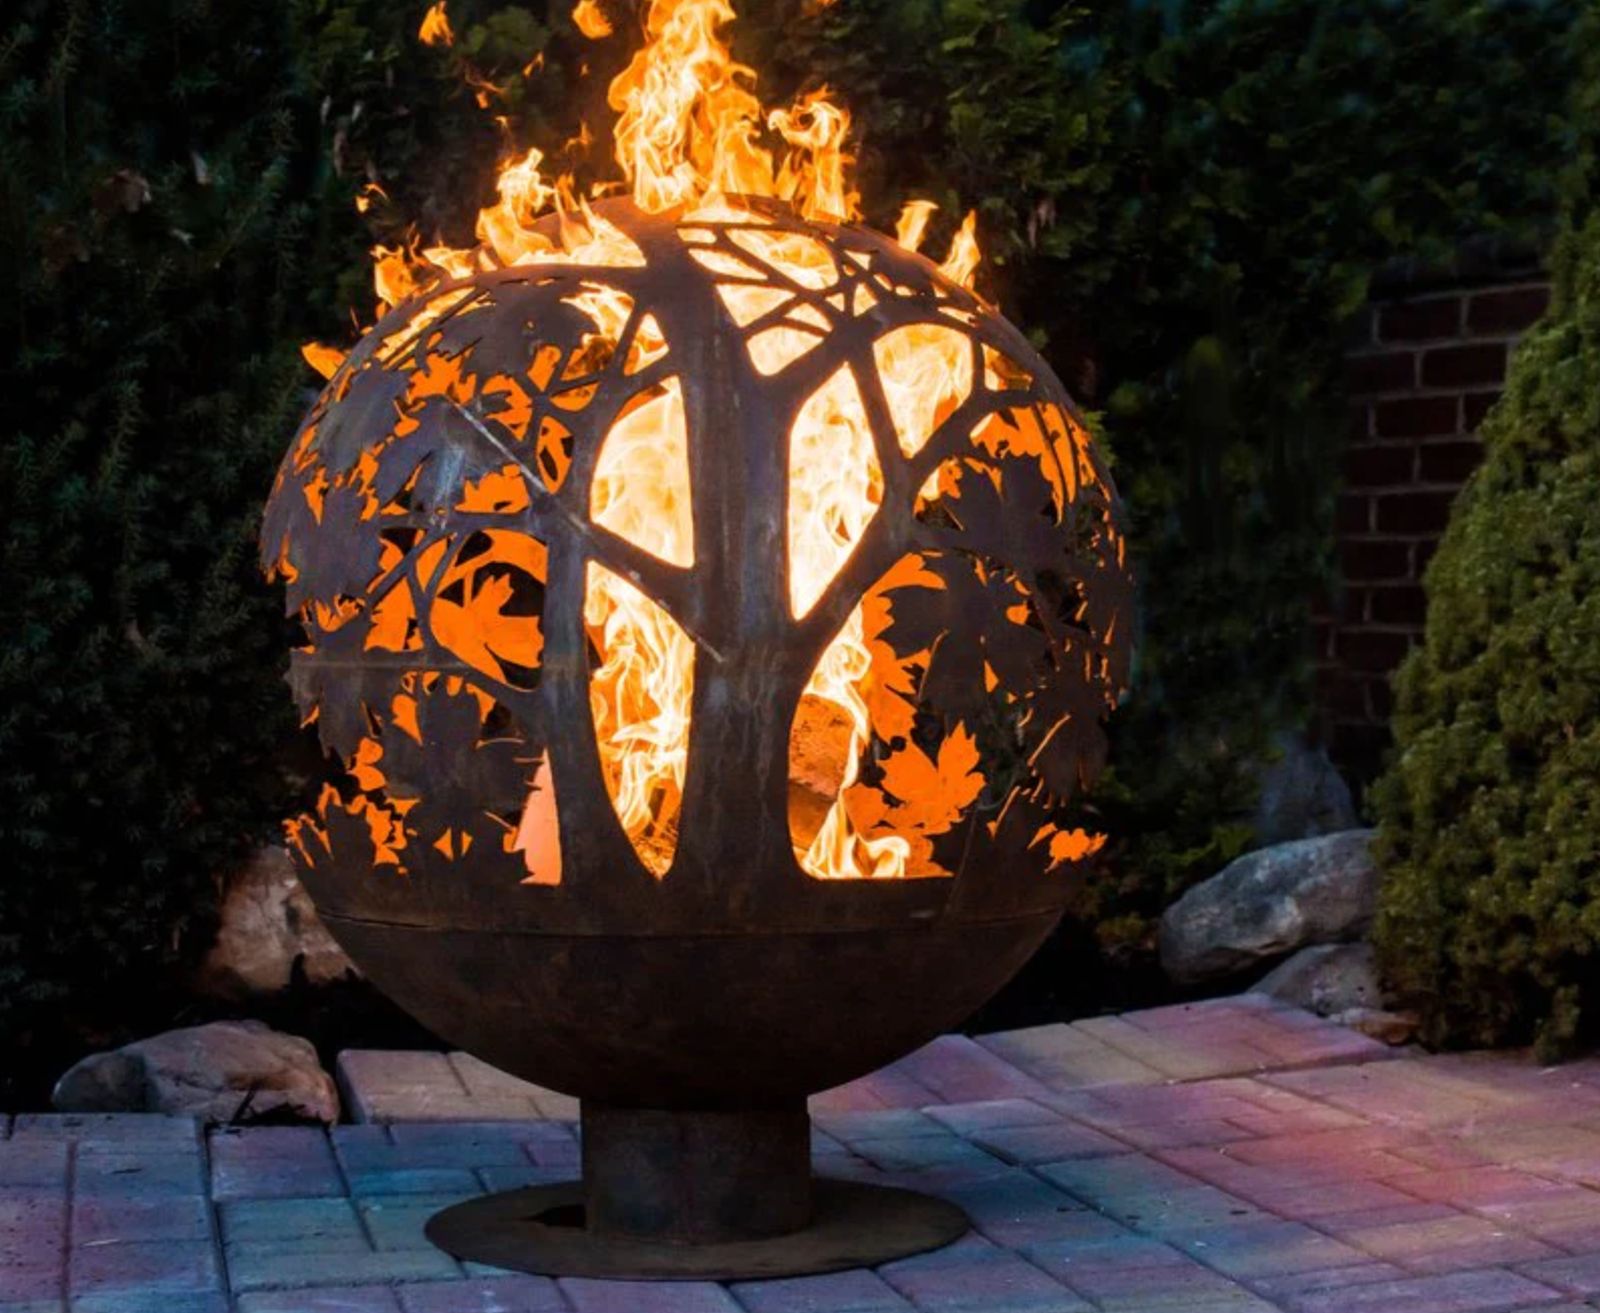 Loc de foc în grădină imaginat sub formă decorativă. Foto via Garden Worth